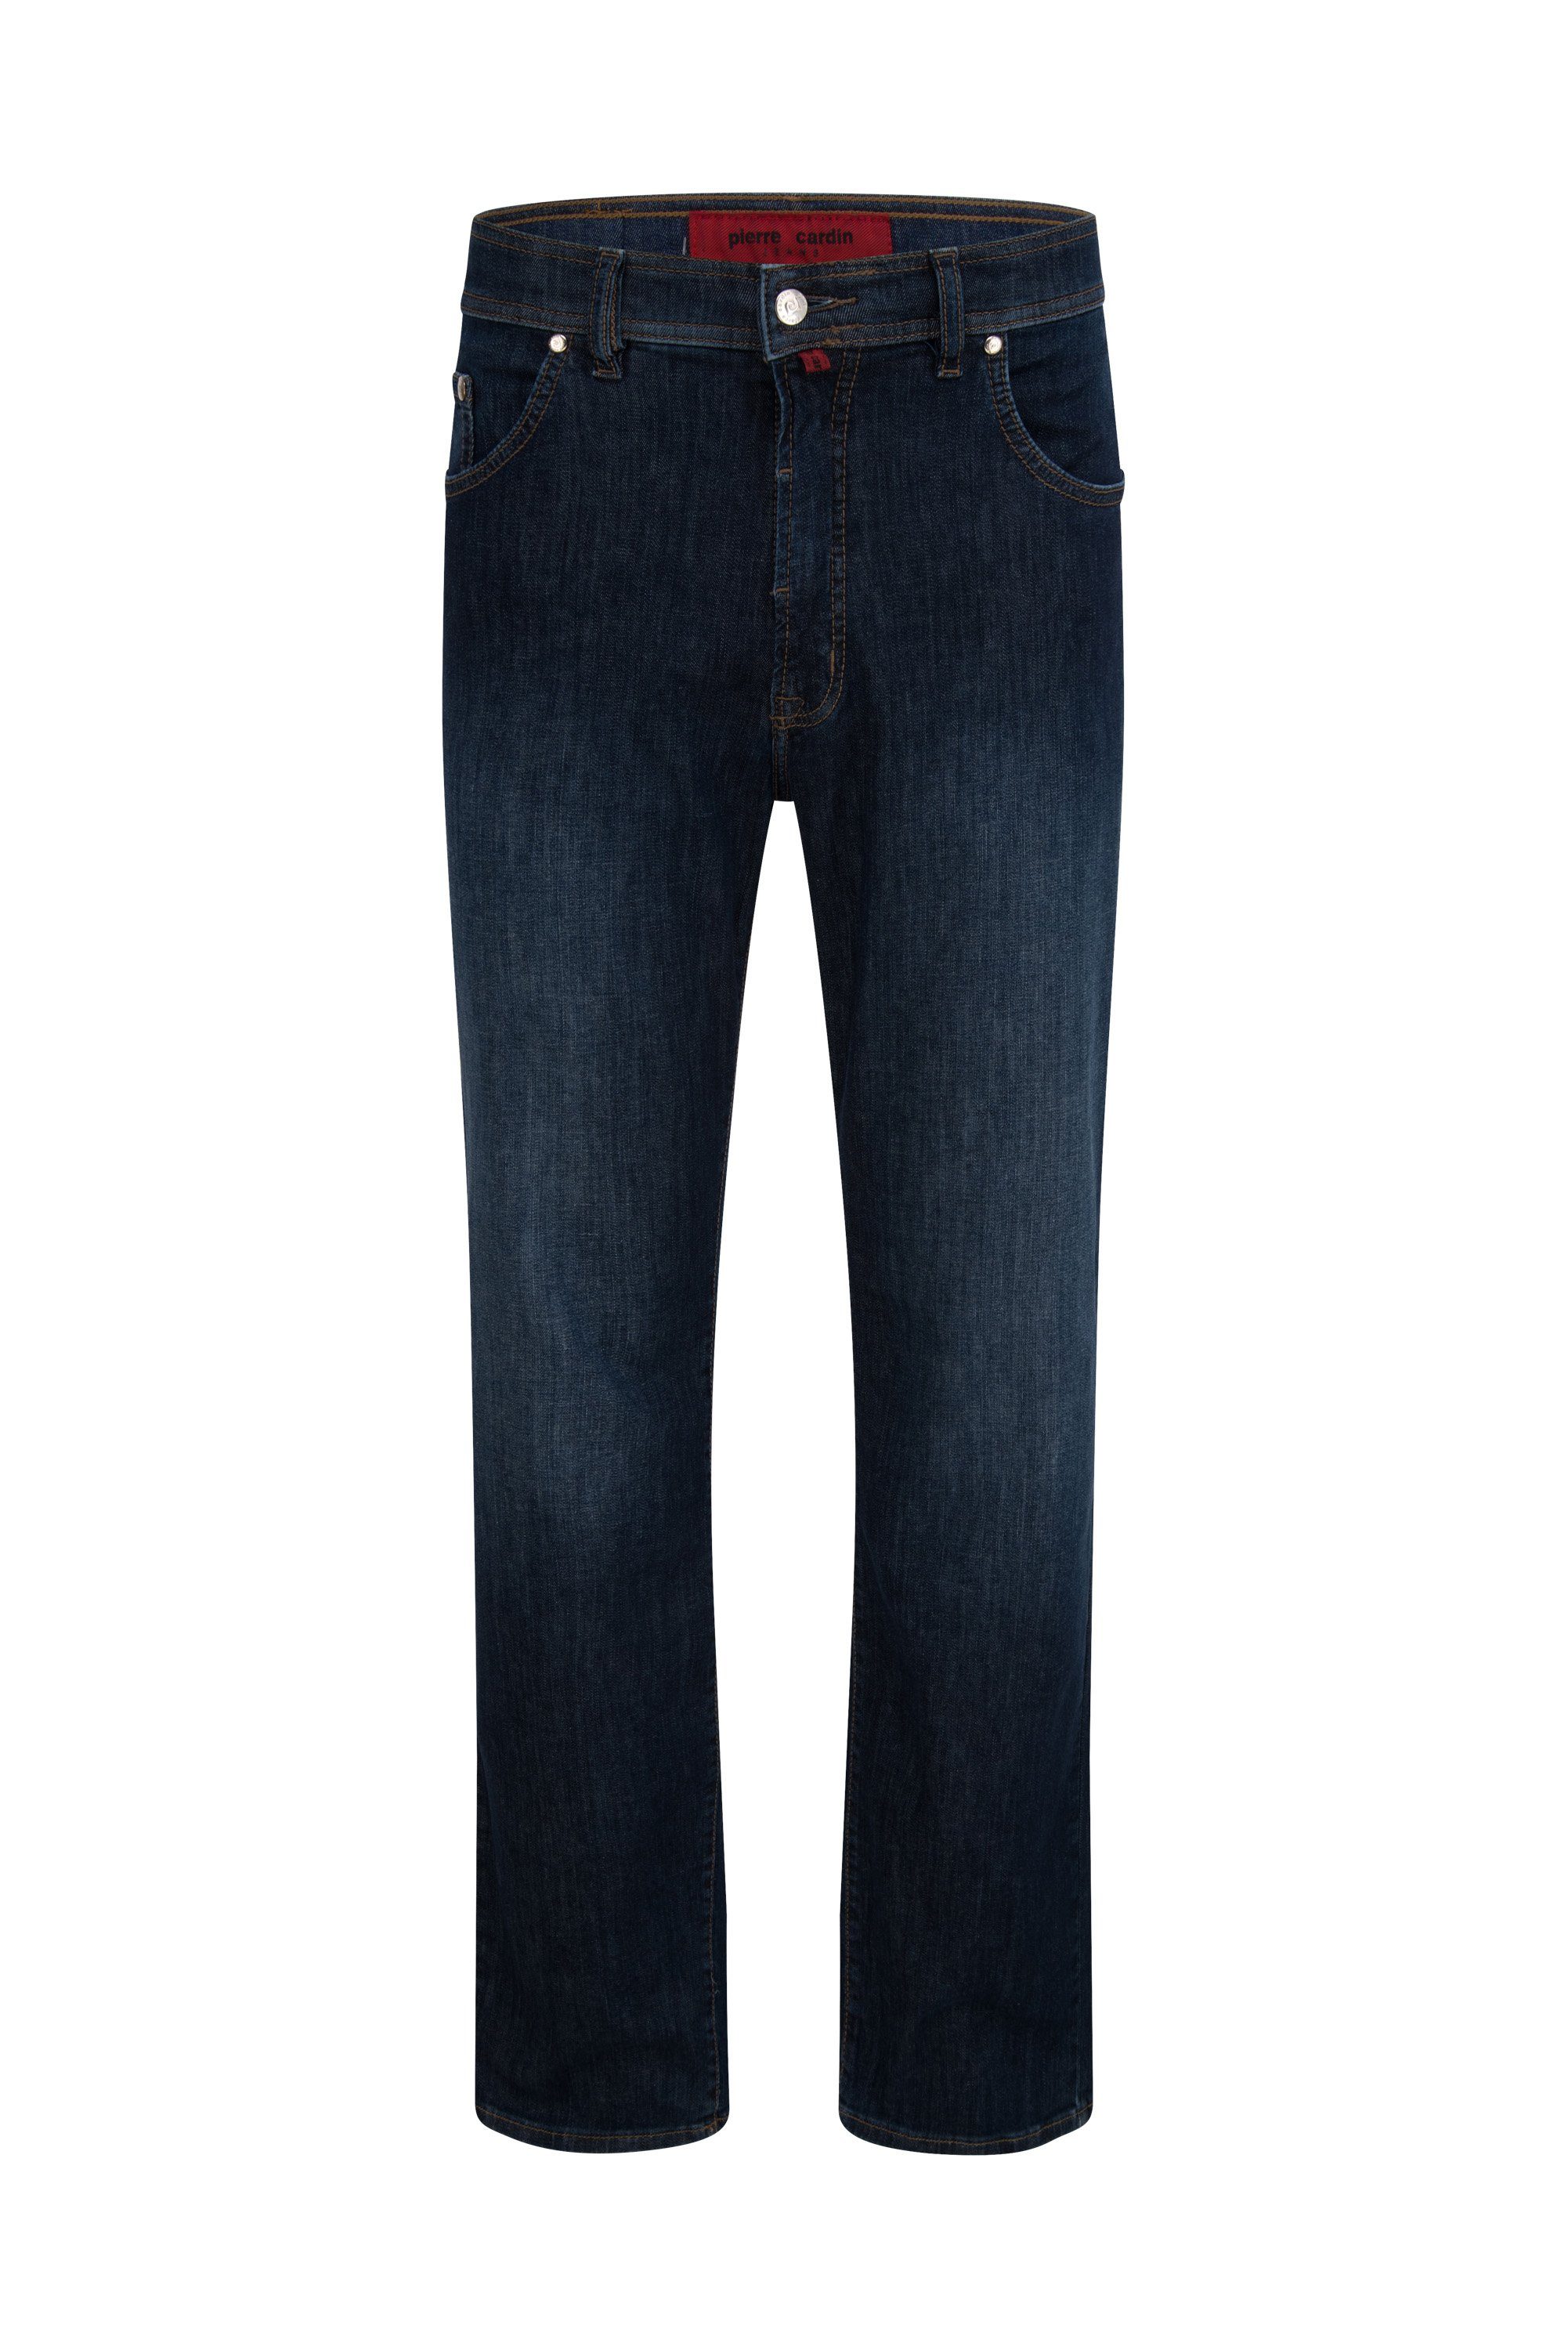 Pierre Cardin 5-Pocket-Jeans PIERRE CARDIN DIJON dark blue rinsed 3231 7011.11 - PREMIUM INDIGO